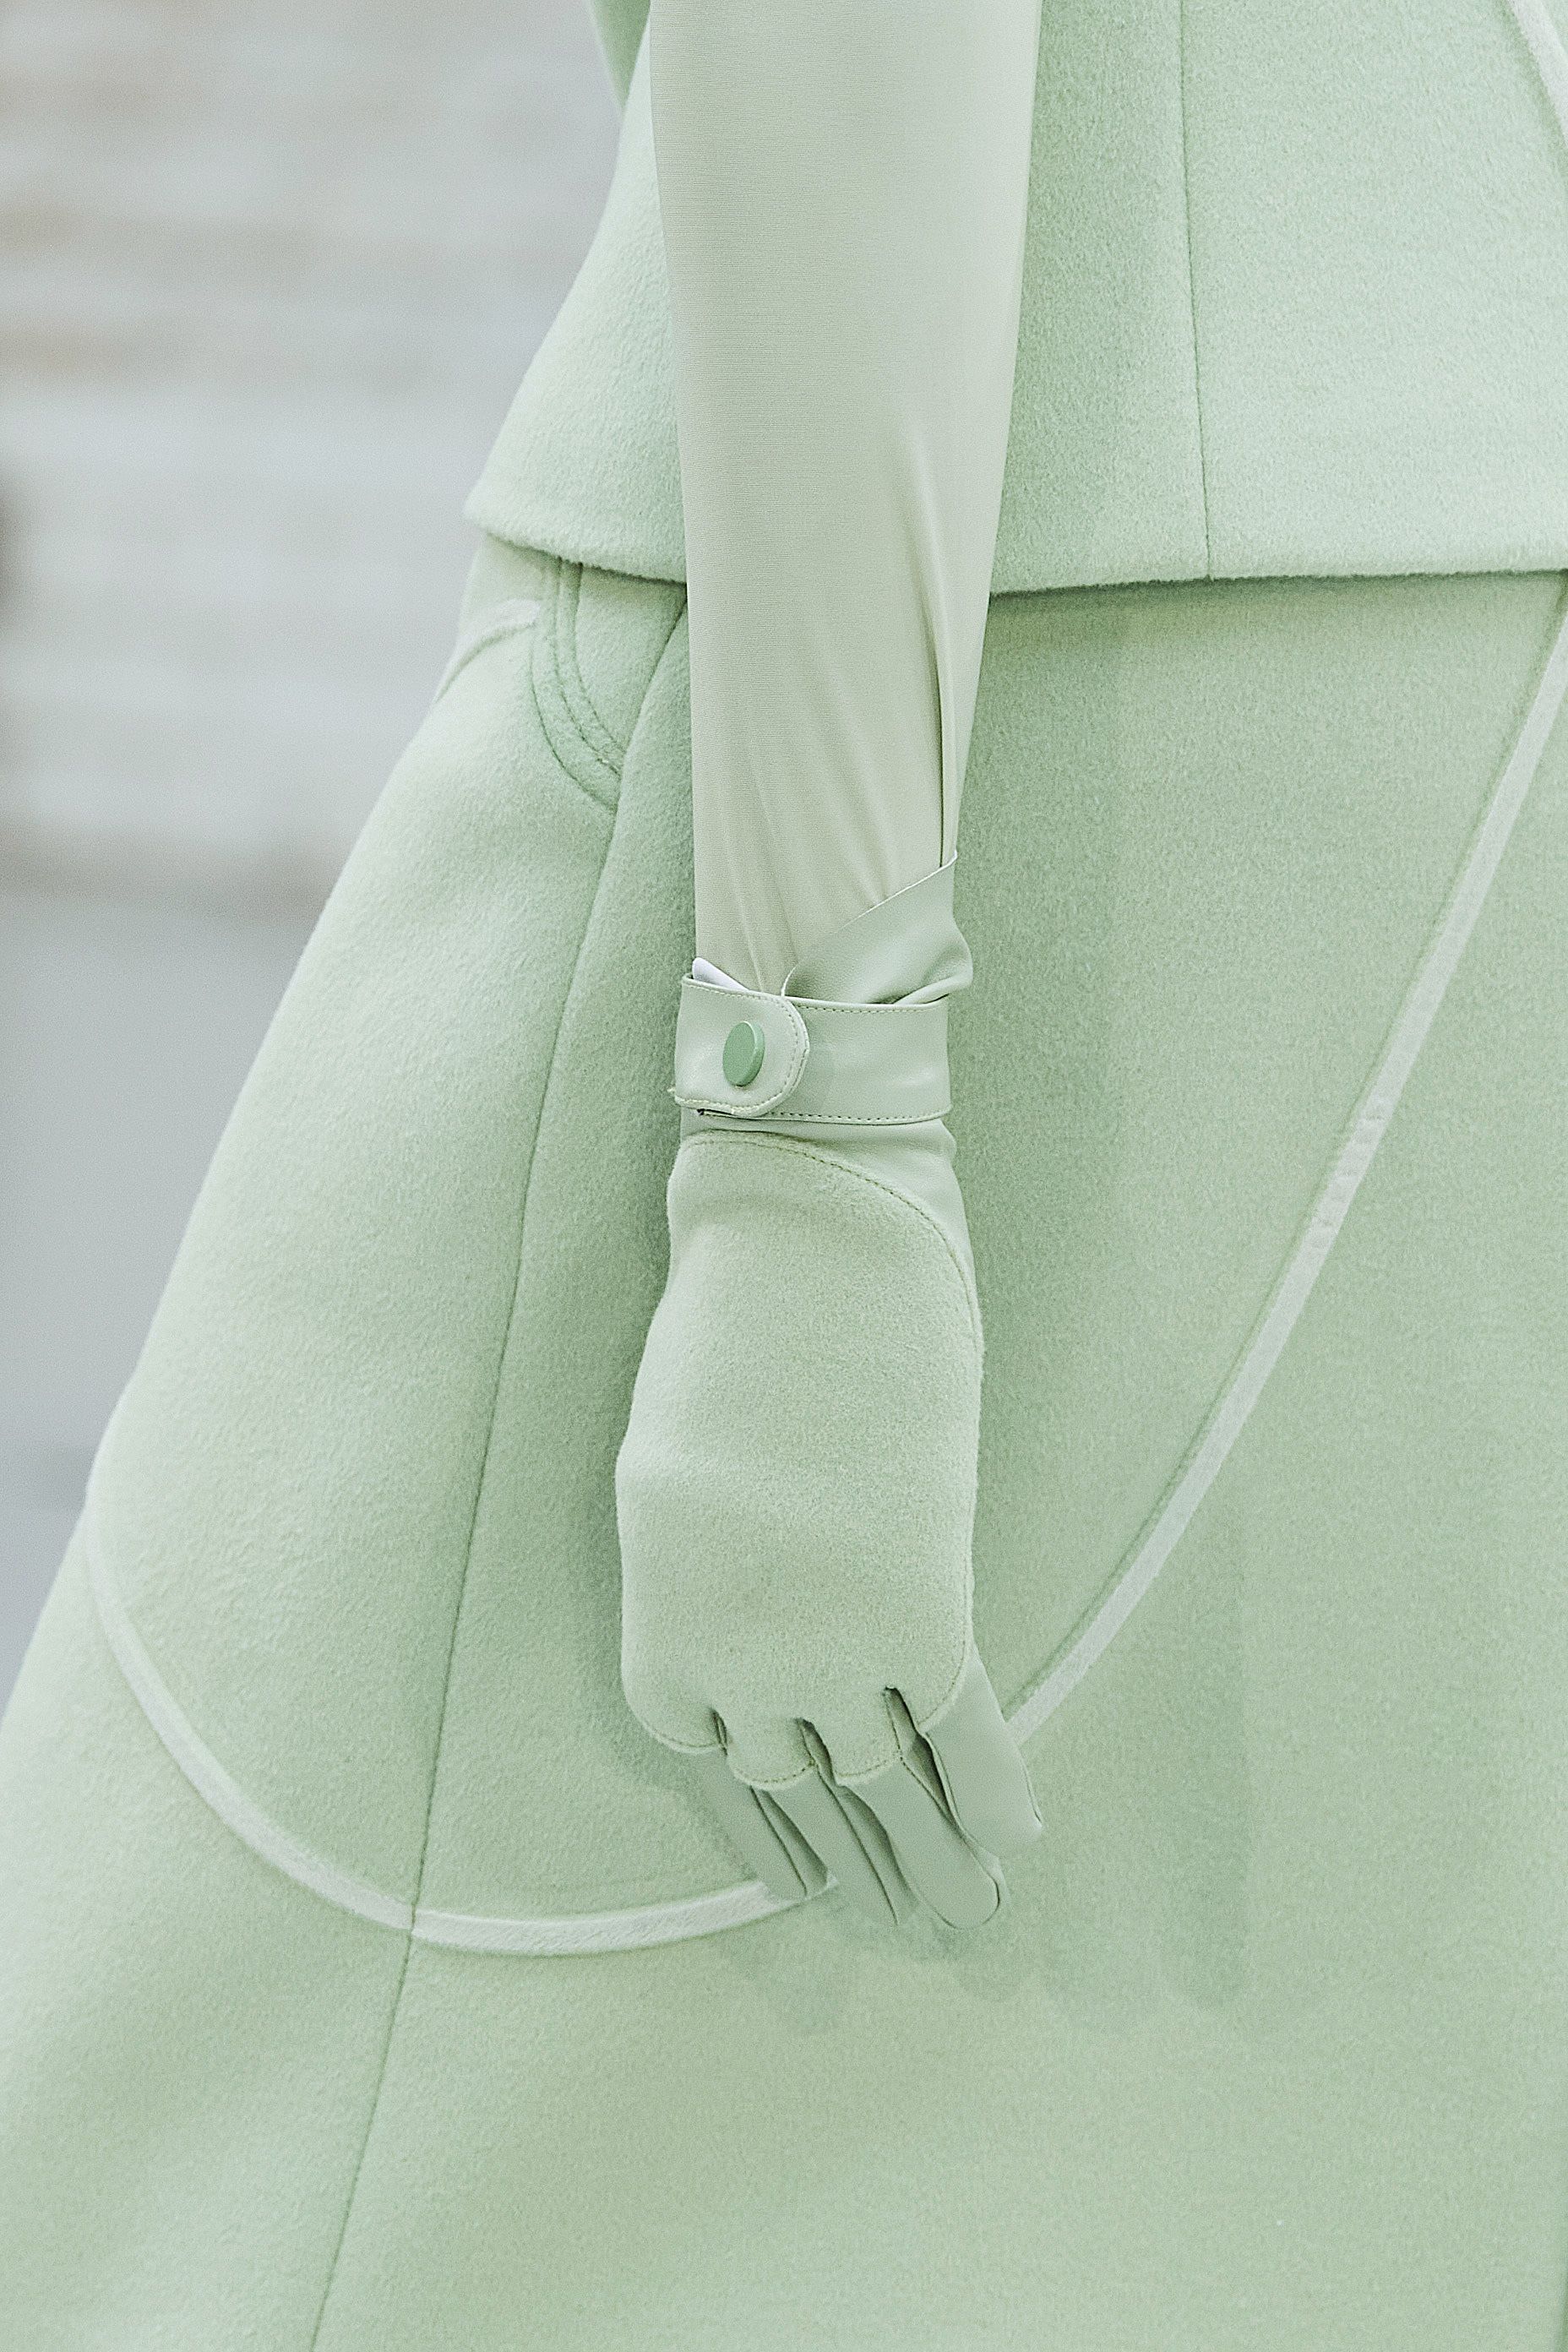 Questi sono i guanti donna moda inverno 2021